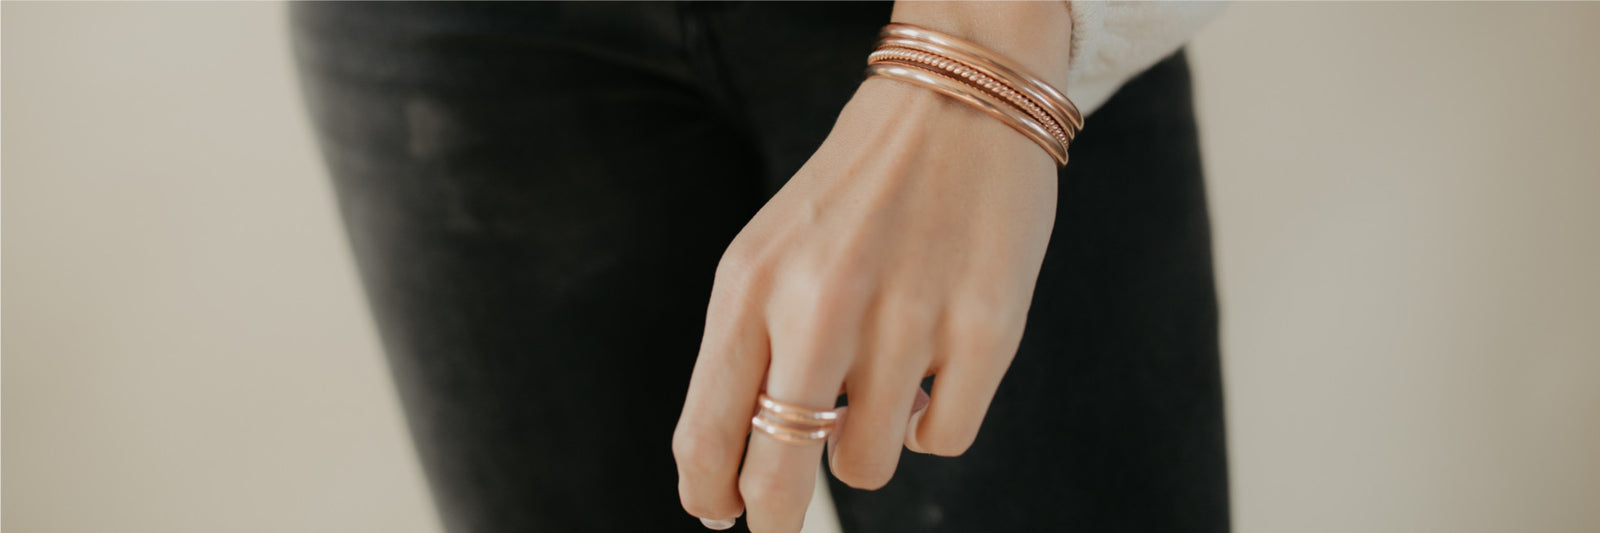 Women's Bracelets & Bangles in Gold & Silver